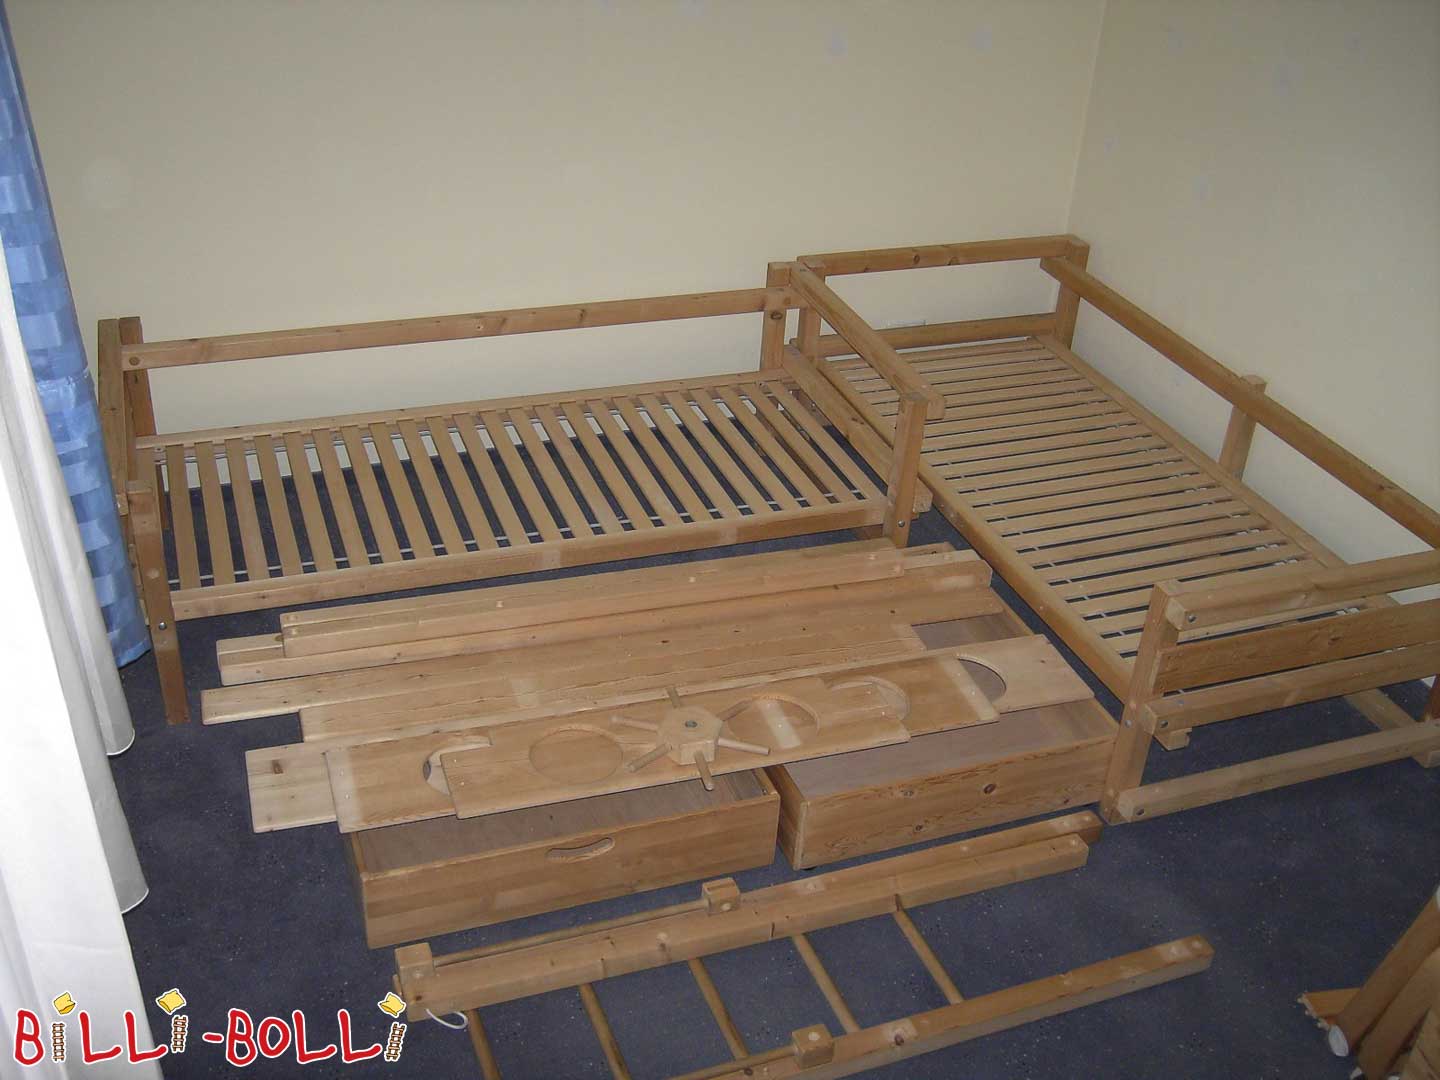 2x jaunimo lova D tipas su daugybe priedų (Kategorija: Naudojama dviaukštė lova)